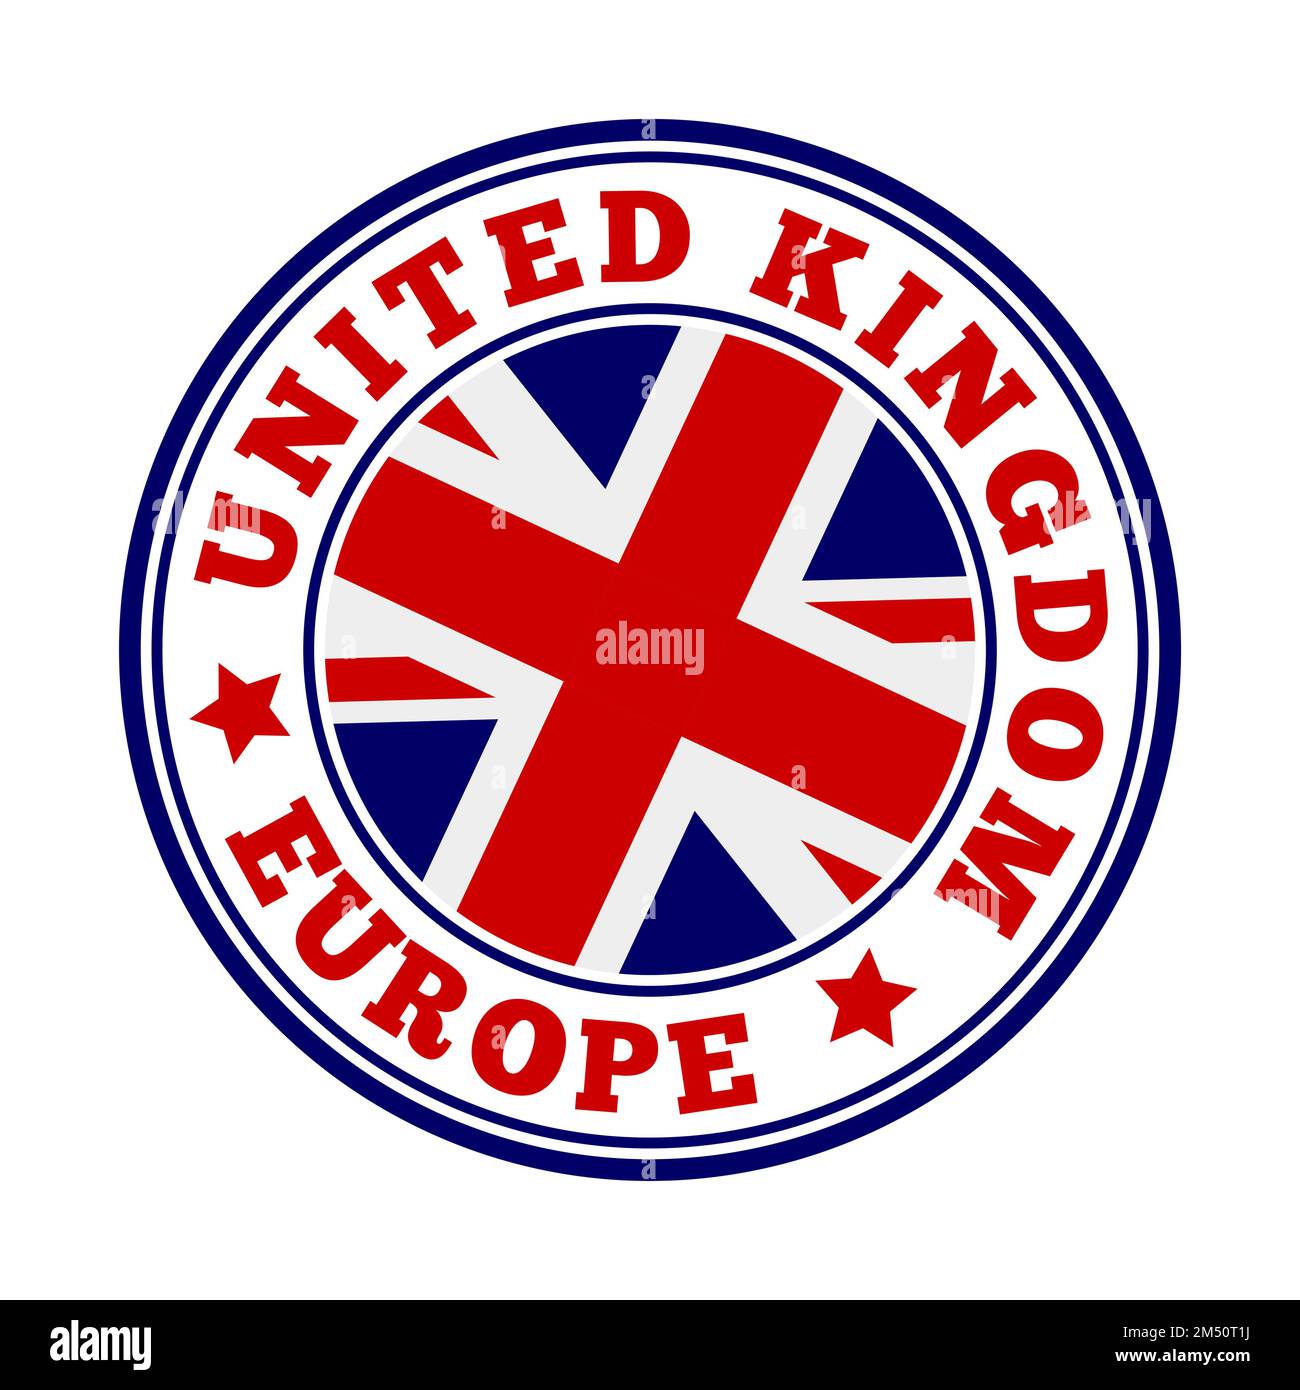 Signe du Royaume-Uni. Logo rond du pays avec drapeau du Royaume-Uni. Illustration vectorielle. Illustration de Vecteur